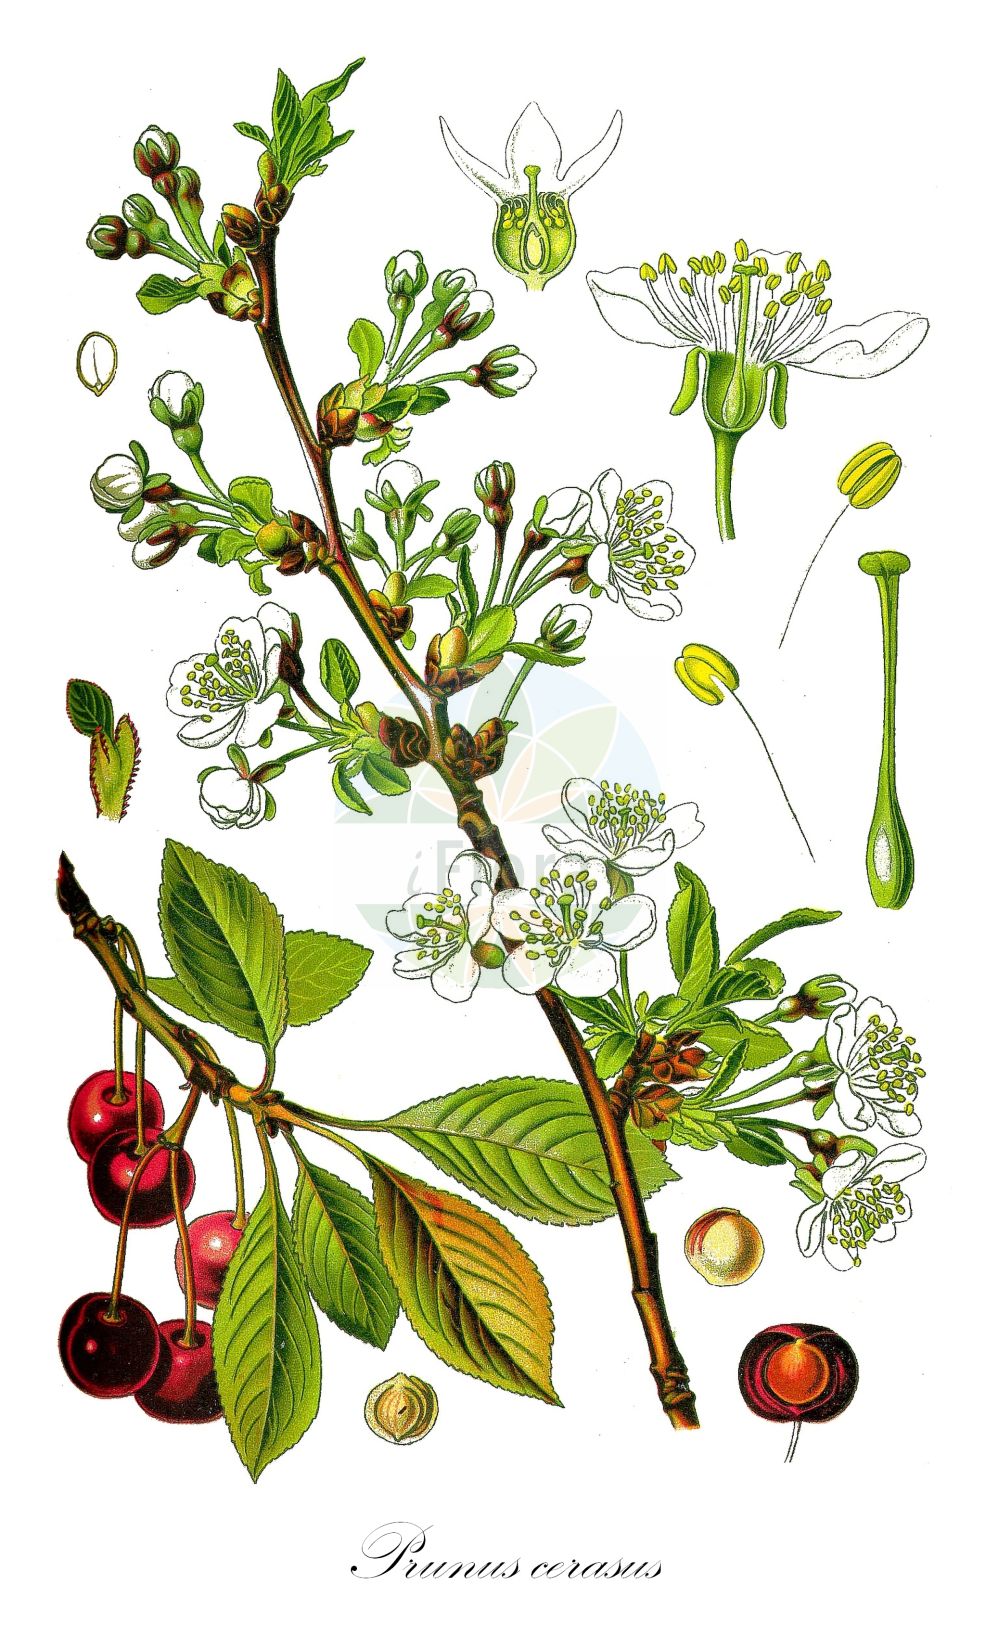 Historische Abbildung von Prunus cerasus (Sauer-Kirsche - Dwarf Cherry). ---- Historical Drawing of Prunus cerasus (Sauer-Kirsche - Dwarf Cherry).(Prunus cerasus,Sauer-Kirsche,Dwarf Cherry,Cerasus acida,Cerasus austera,Cerasus collina,Cerasus vulgaris,Prunus acida,Prunus caproniana,Prunus cerasus,Prunus cerasus subsp. acida,Sauer-Kirsche,Baum-Sauer-Kirsche,Strauch-Weichsel,Weichsel,Dwarf Cherry,Amarello Cherry,Sour Cherry,Tart Cherry,Prunus,Kirsche,Plum,Rosaceae,Rosengewächse,Rose family,Thomé (1885))